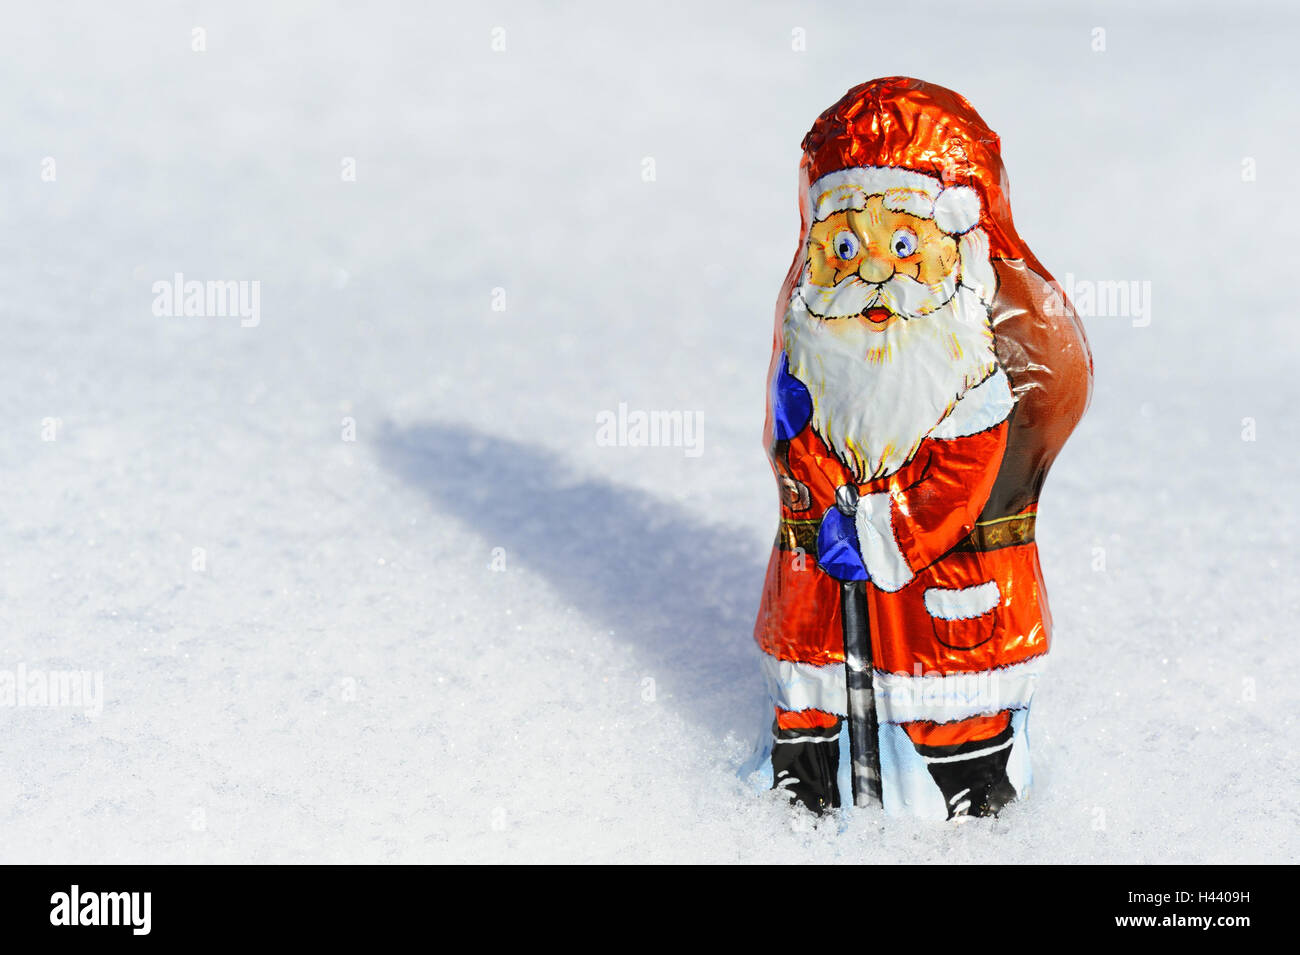 Chocolate Santa Claus, snow, Stock Photo